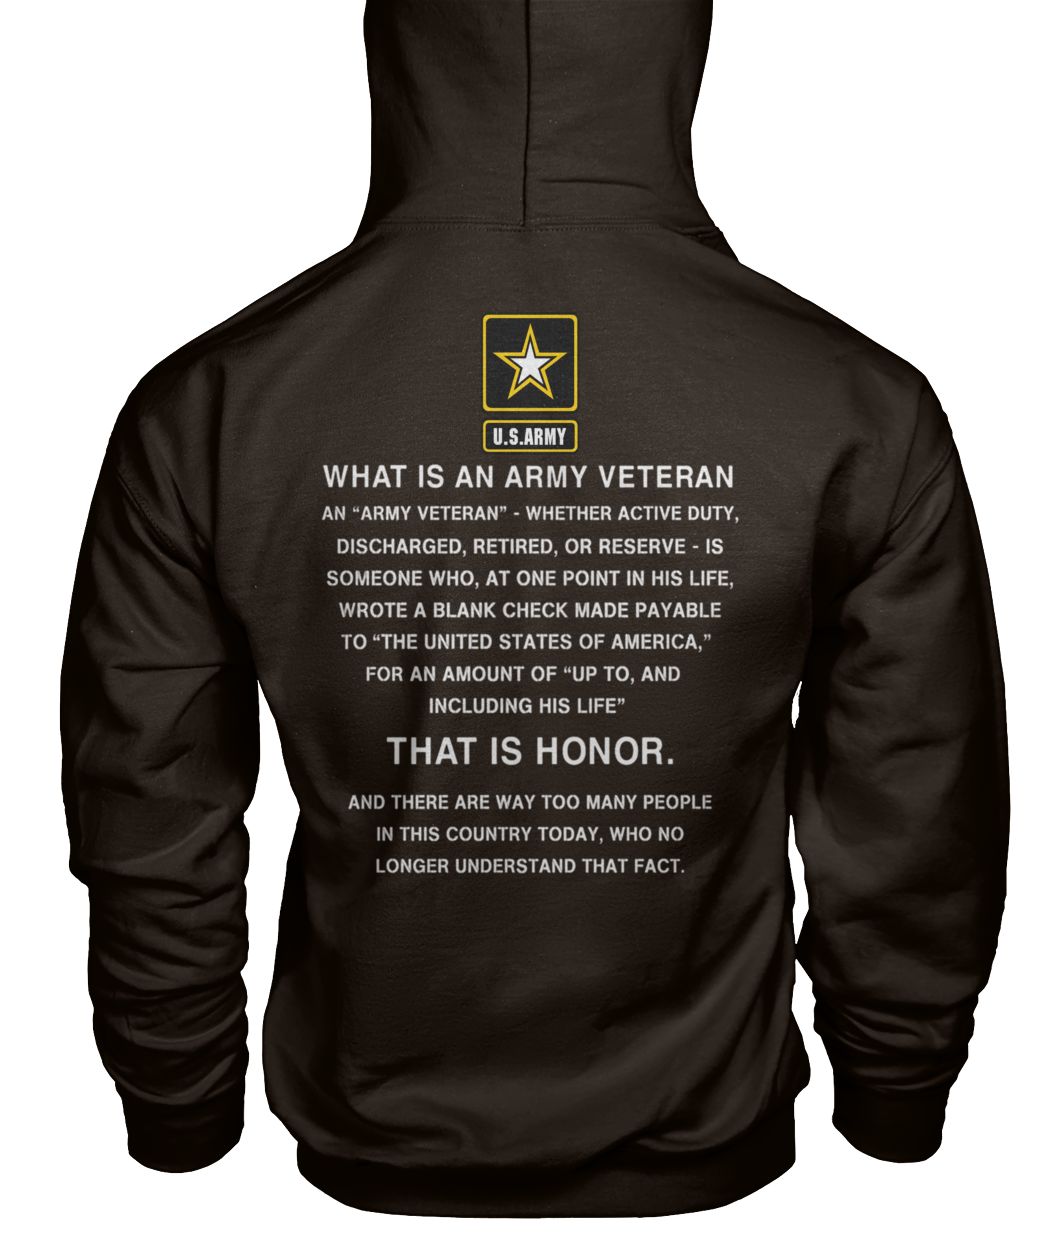 U.S.Army what is an army veteran that is honor gildan hoodie